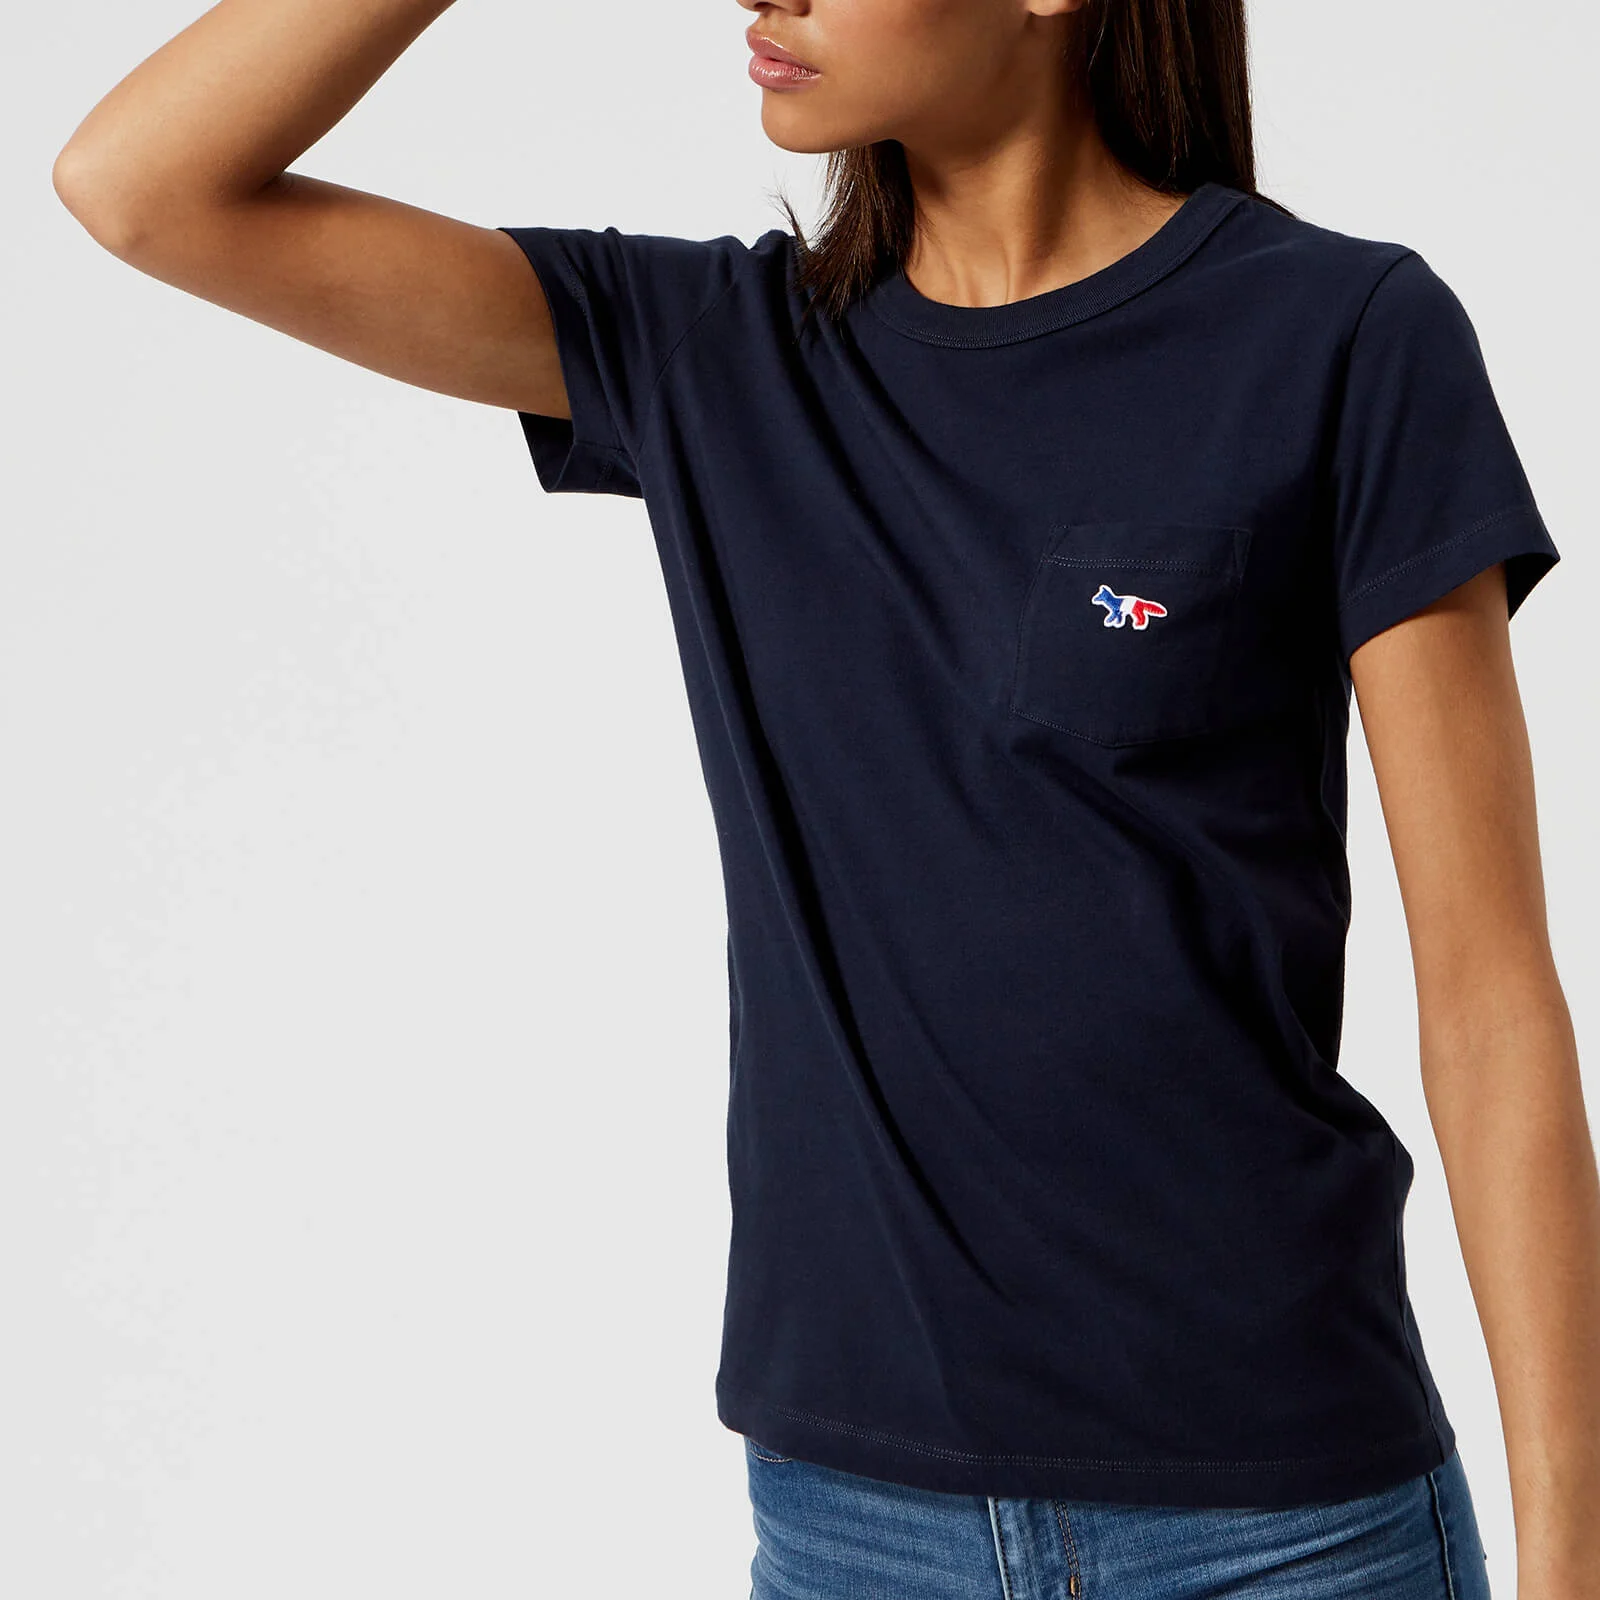 Maison Kitsuné Women's Tricolor Fox T-Shirt - Navy Image 1